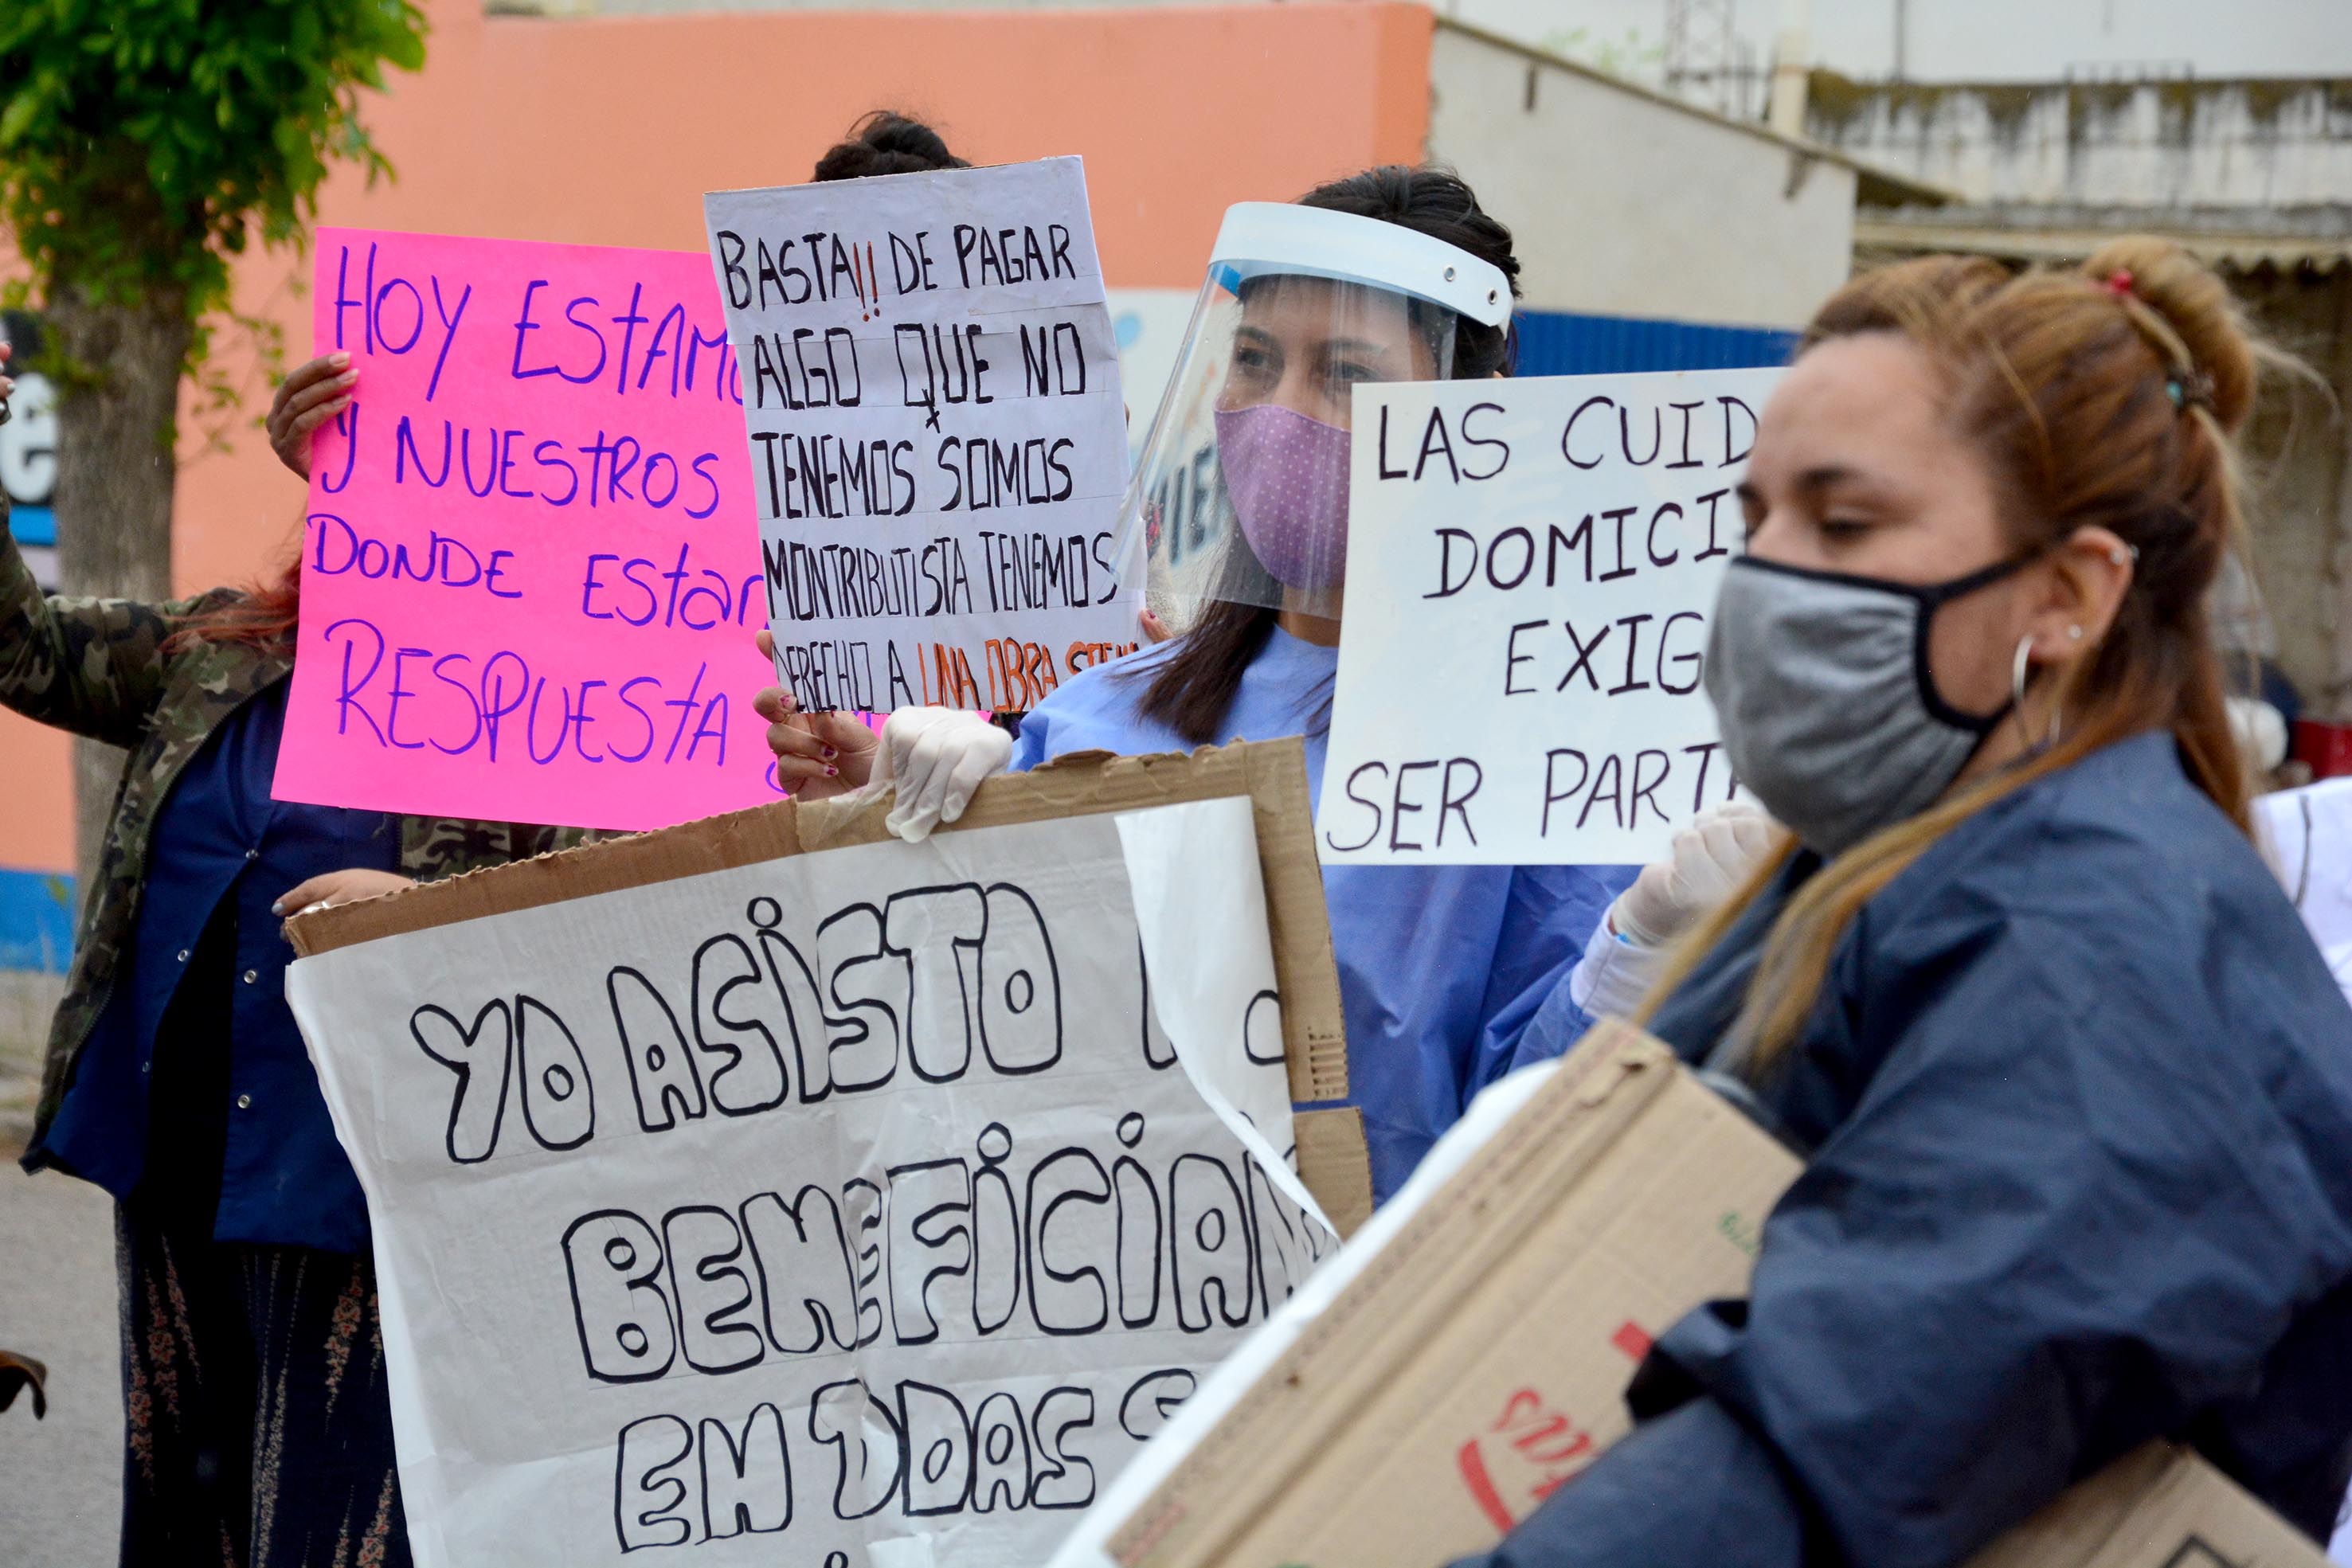 Los acompañantes terapéuticos esperan una respuesta urgente de la Provincia.
Foto : Marcelo Ochoa